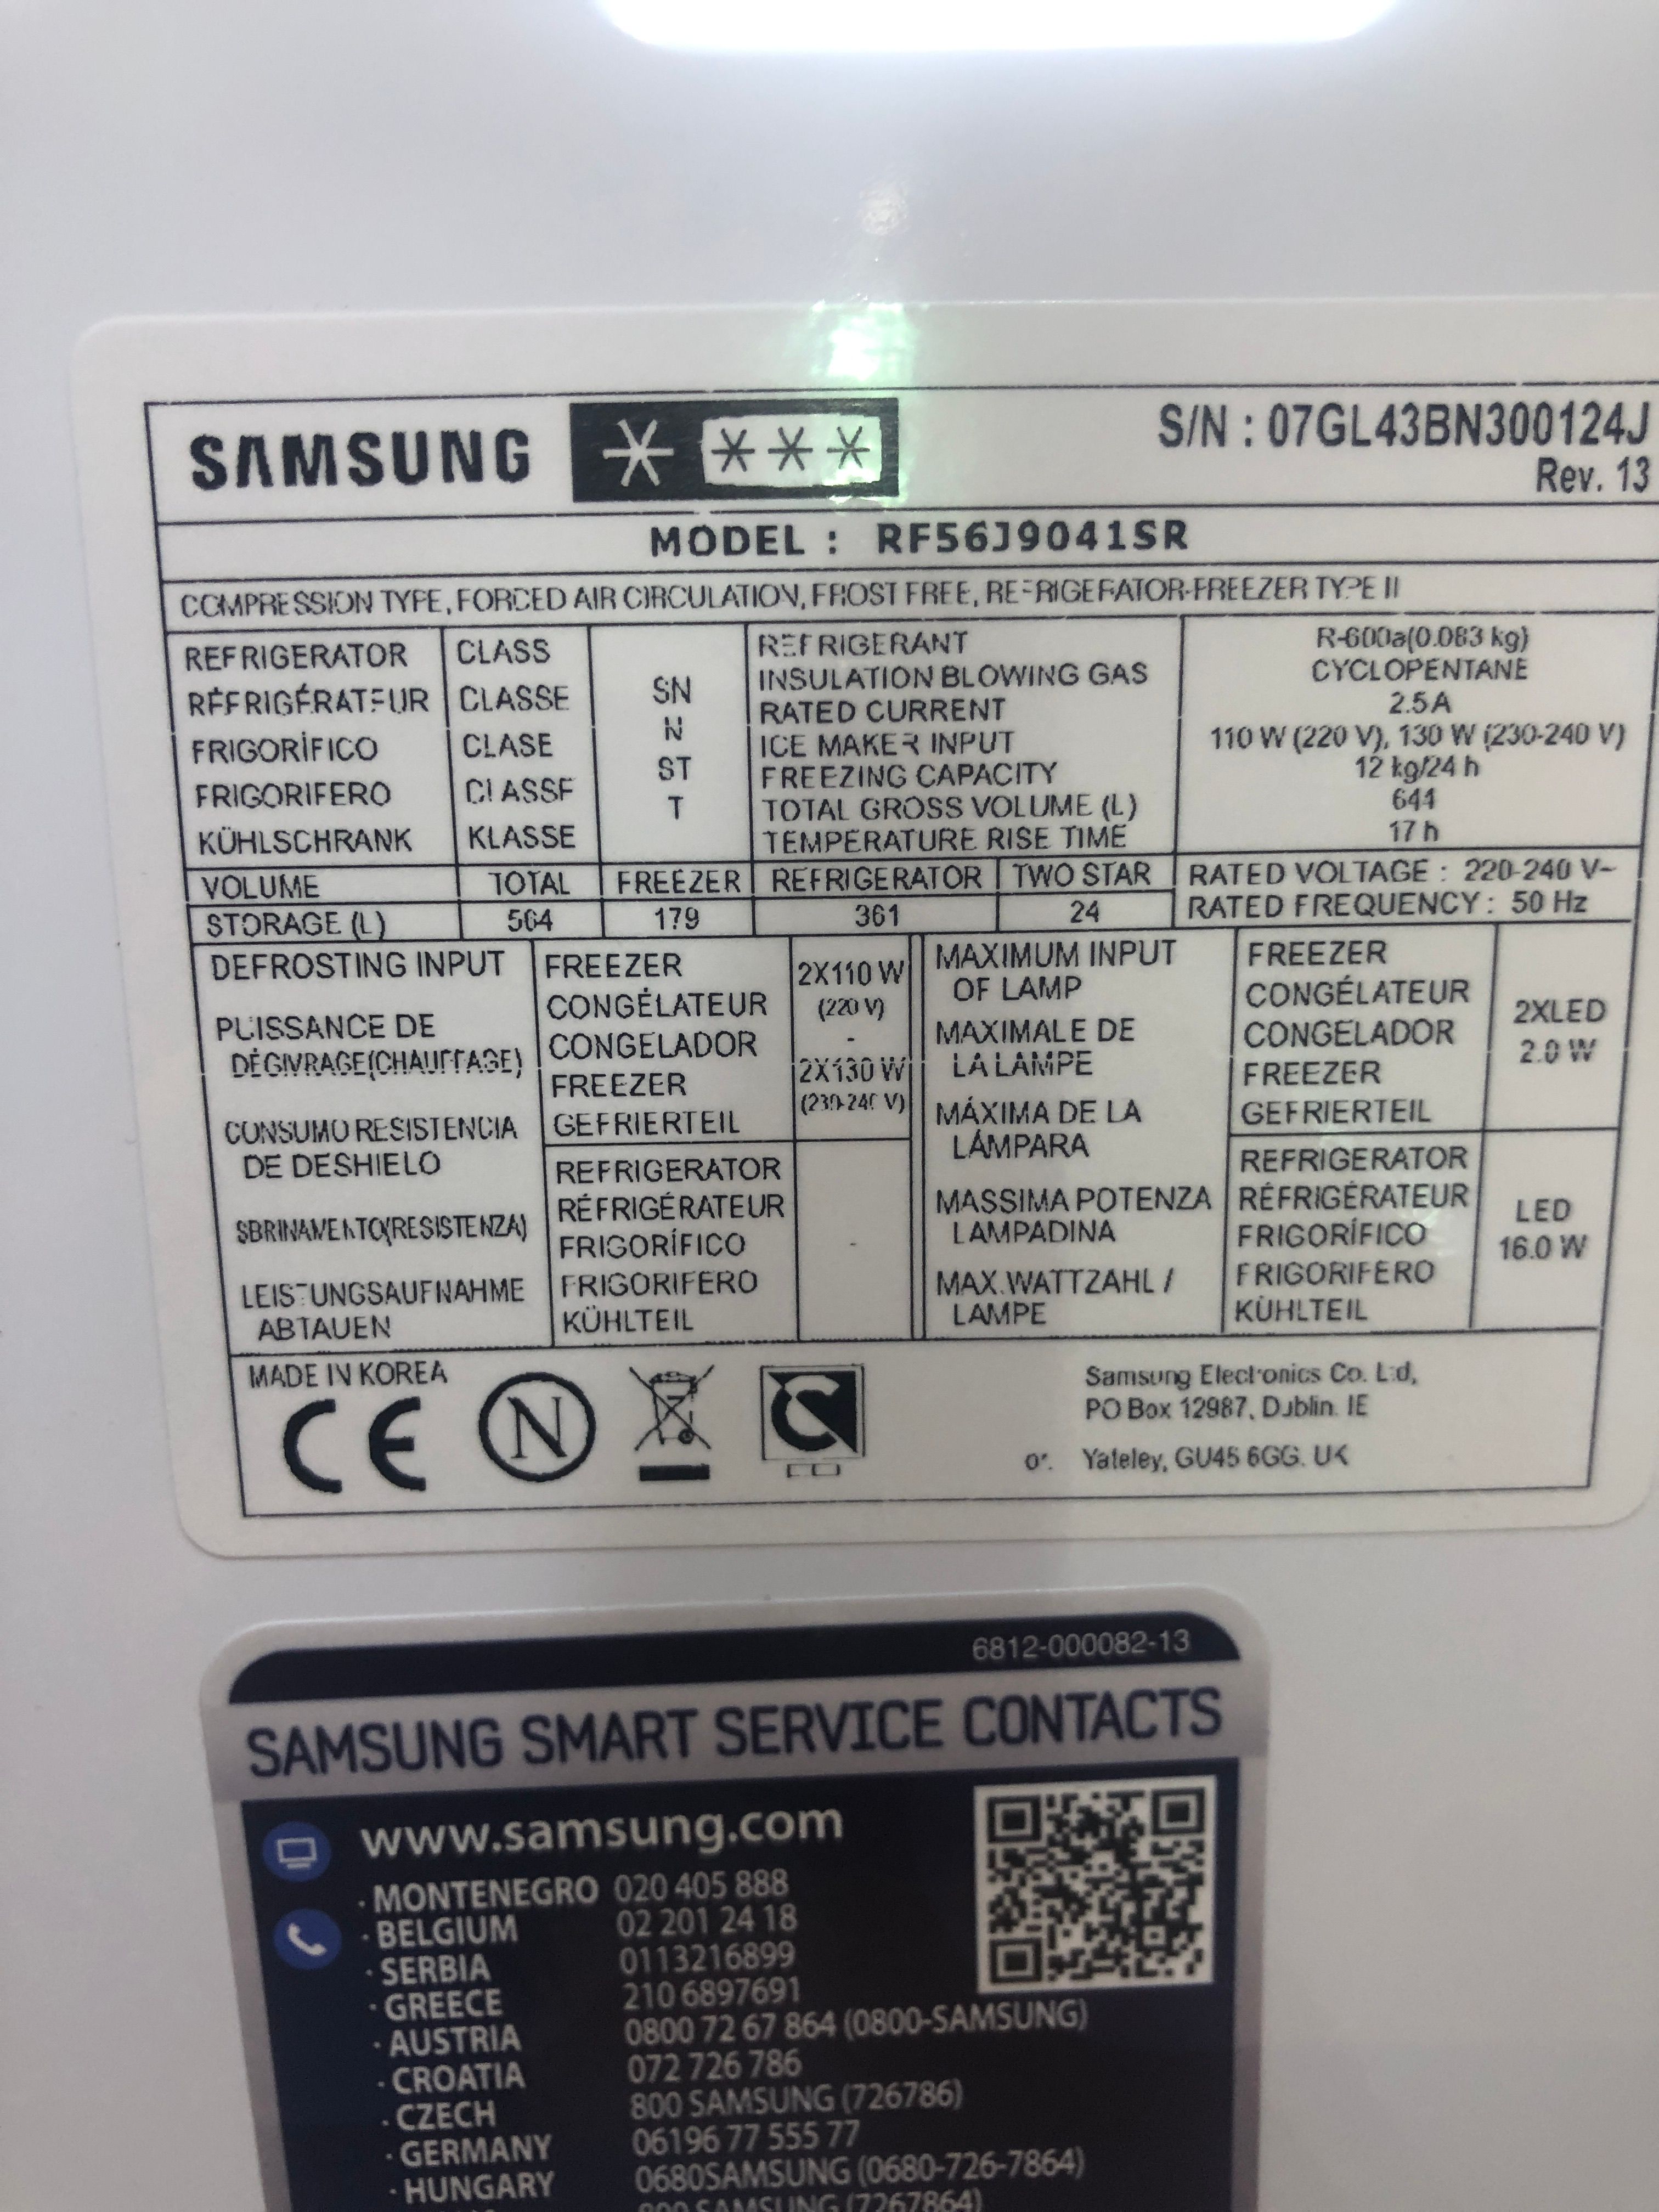 verkeerde type koelkast bij registratie - Samsung Community